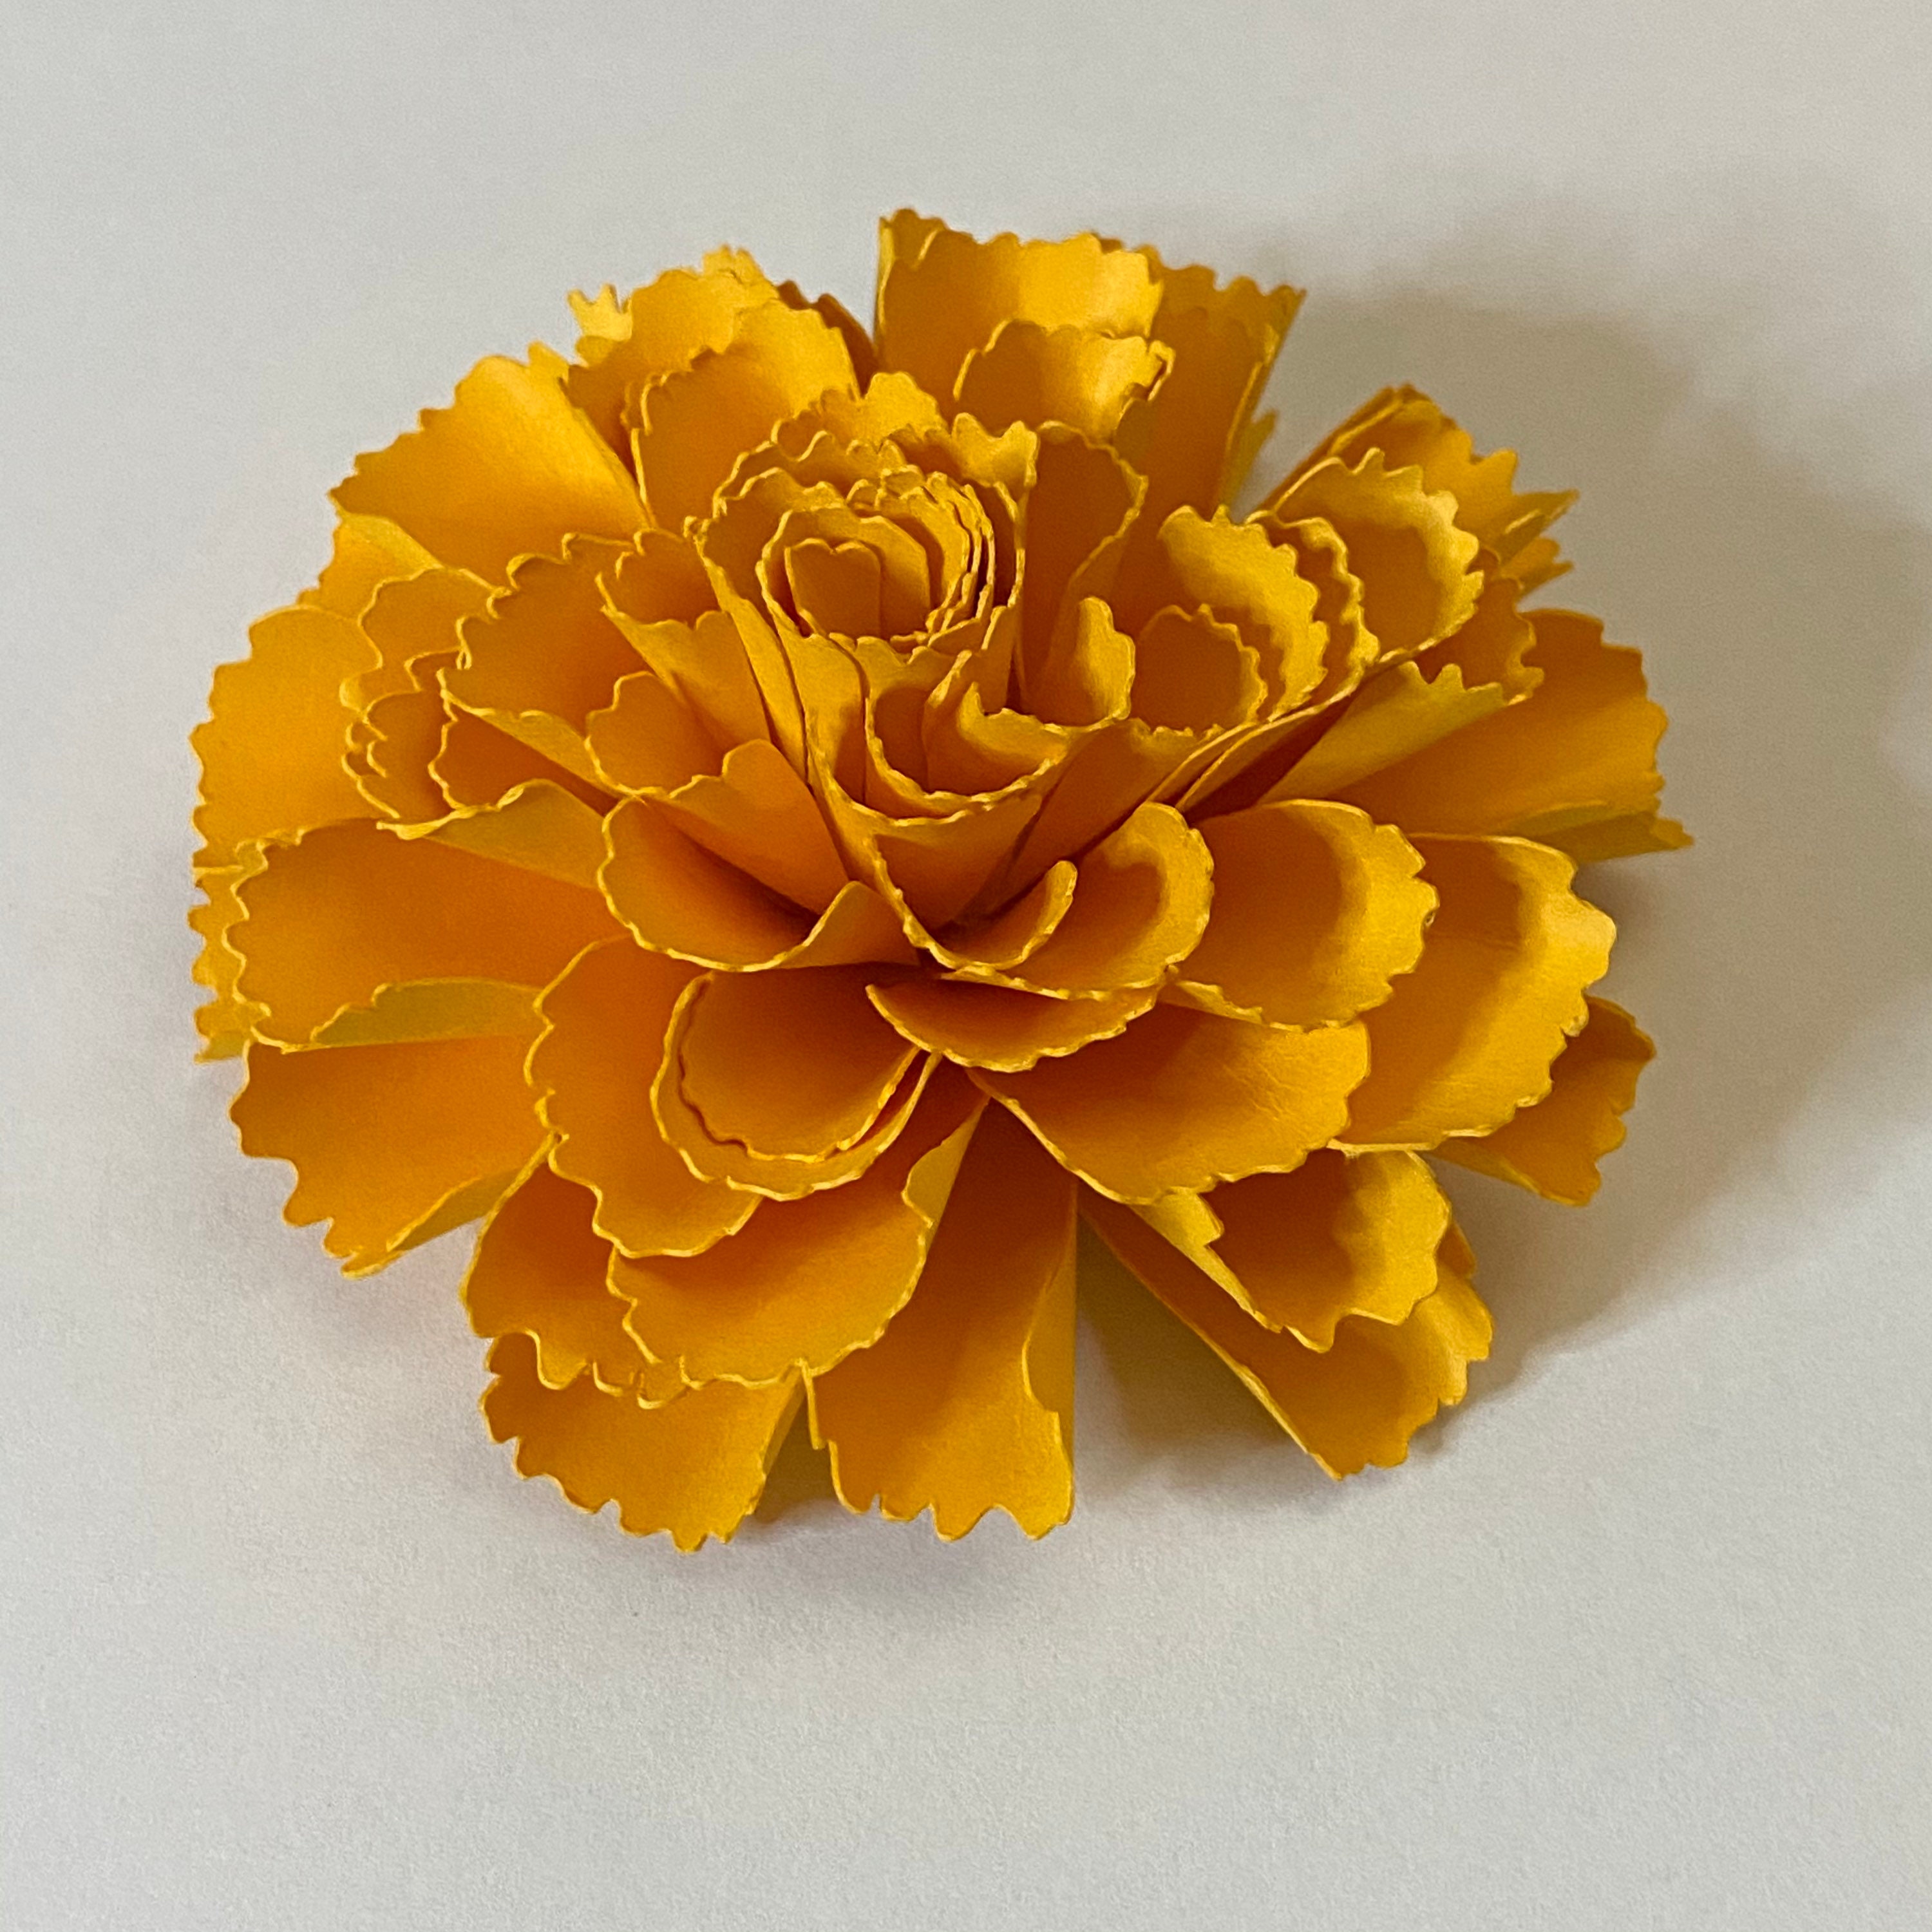 Marigold Flower SVG Cut File / Flor De Muerto / Cempasuchil / Day